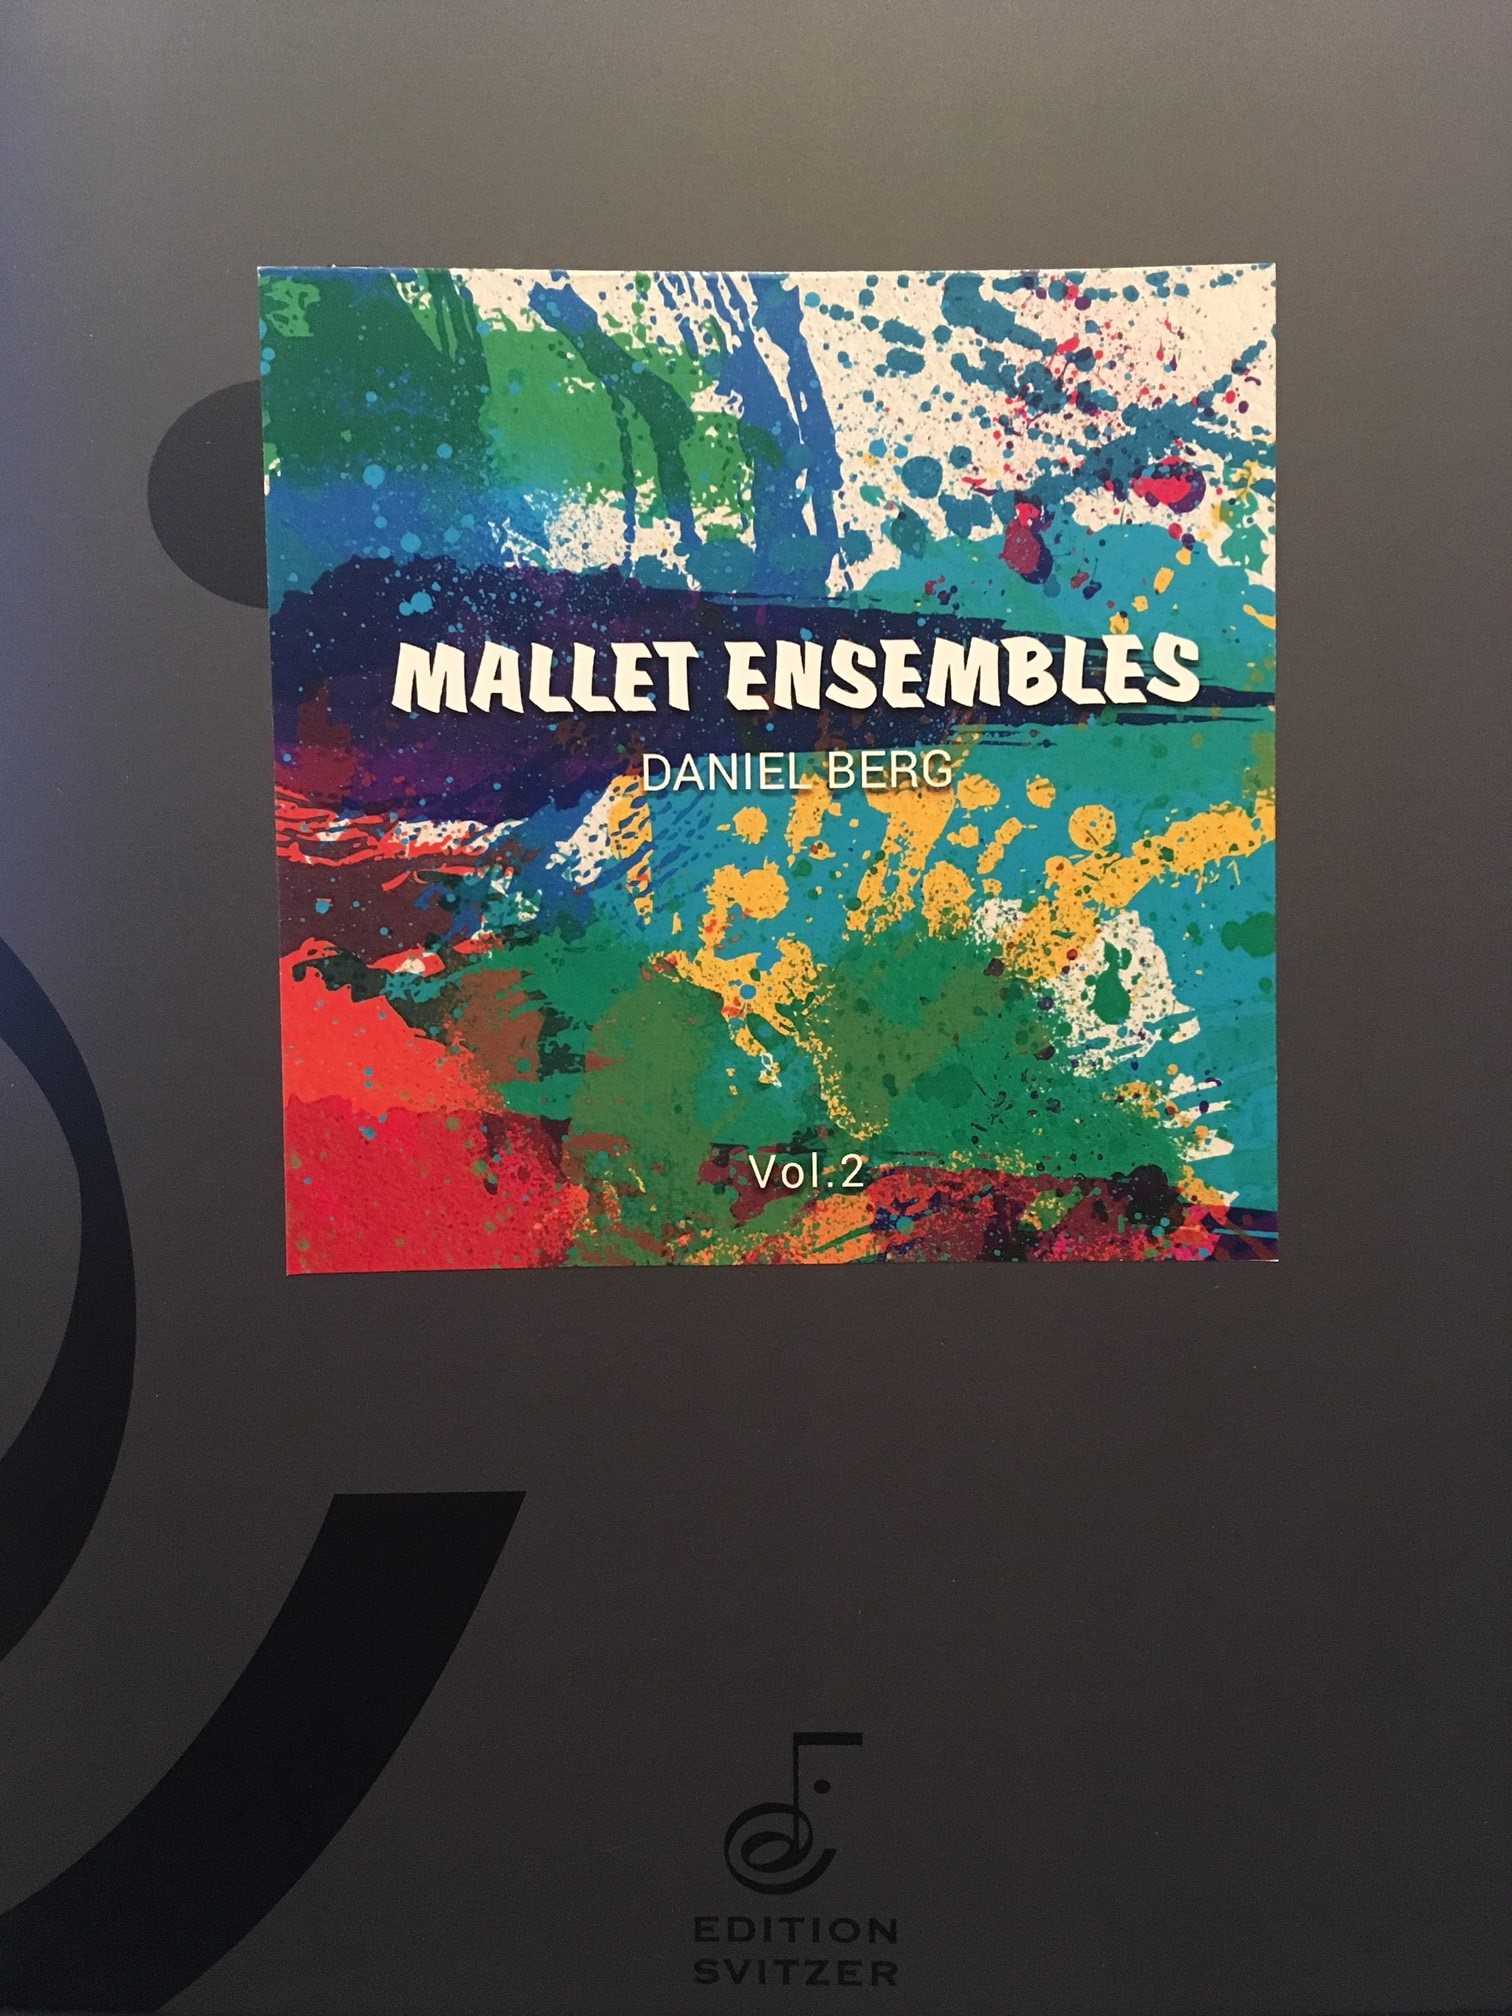 Mallet Ensembles Vol. 2 by Daniel Berg